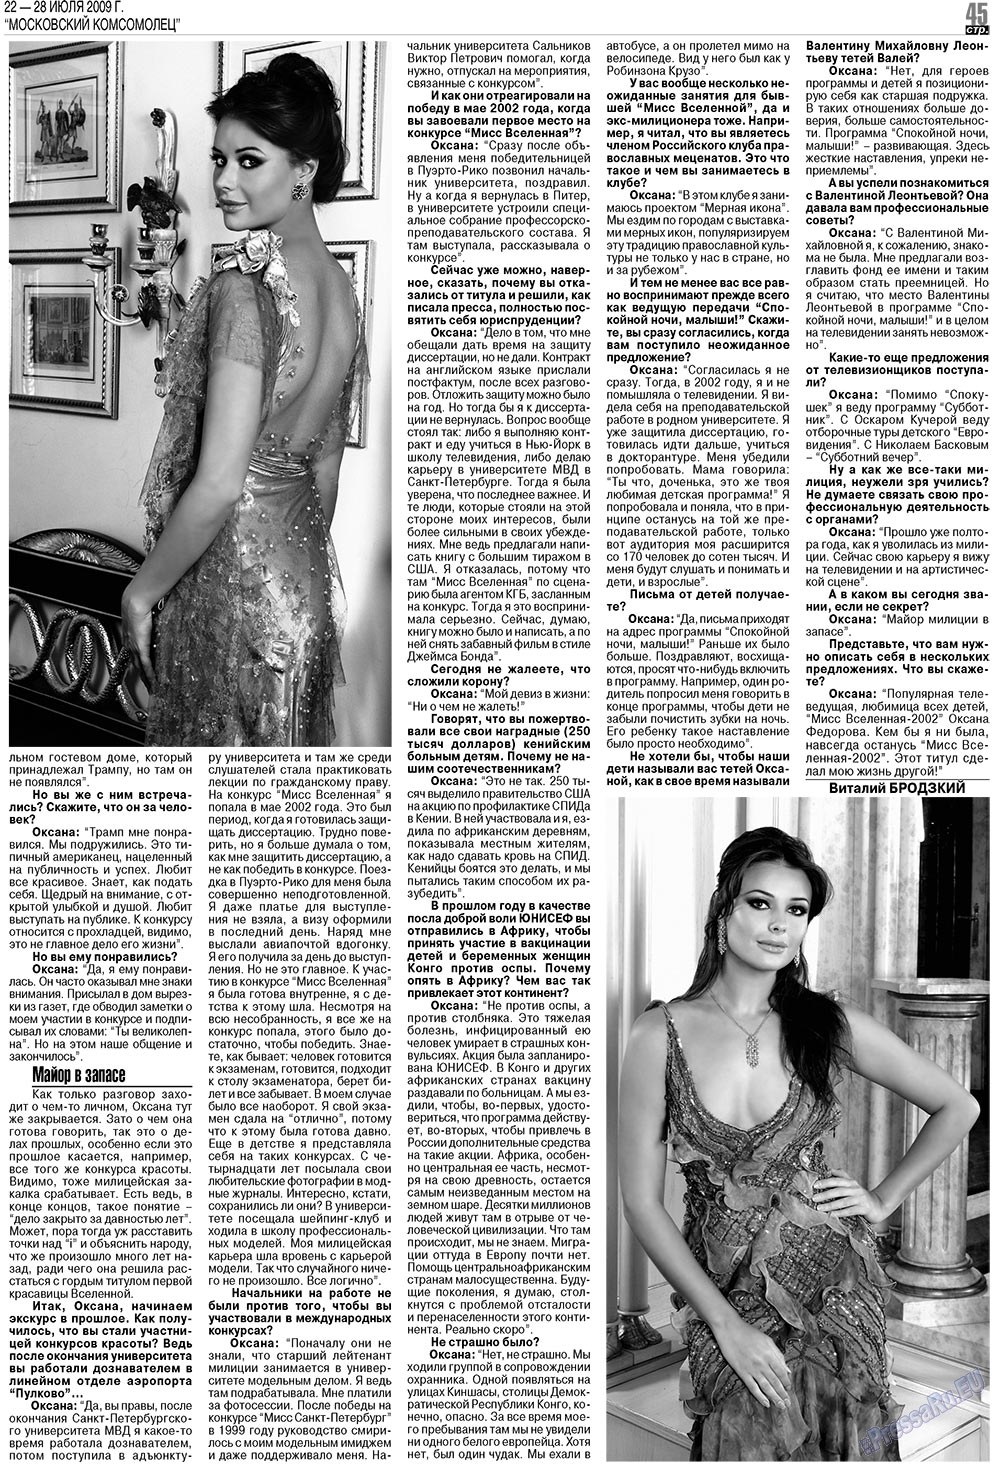 МК Испания, газета. 2009 №30 стр.45